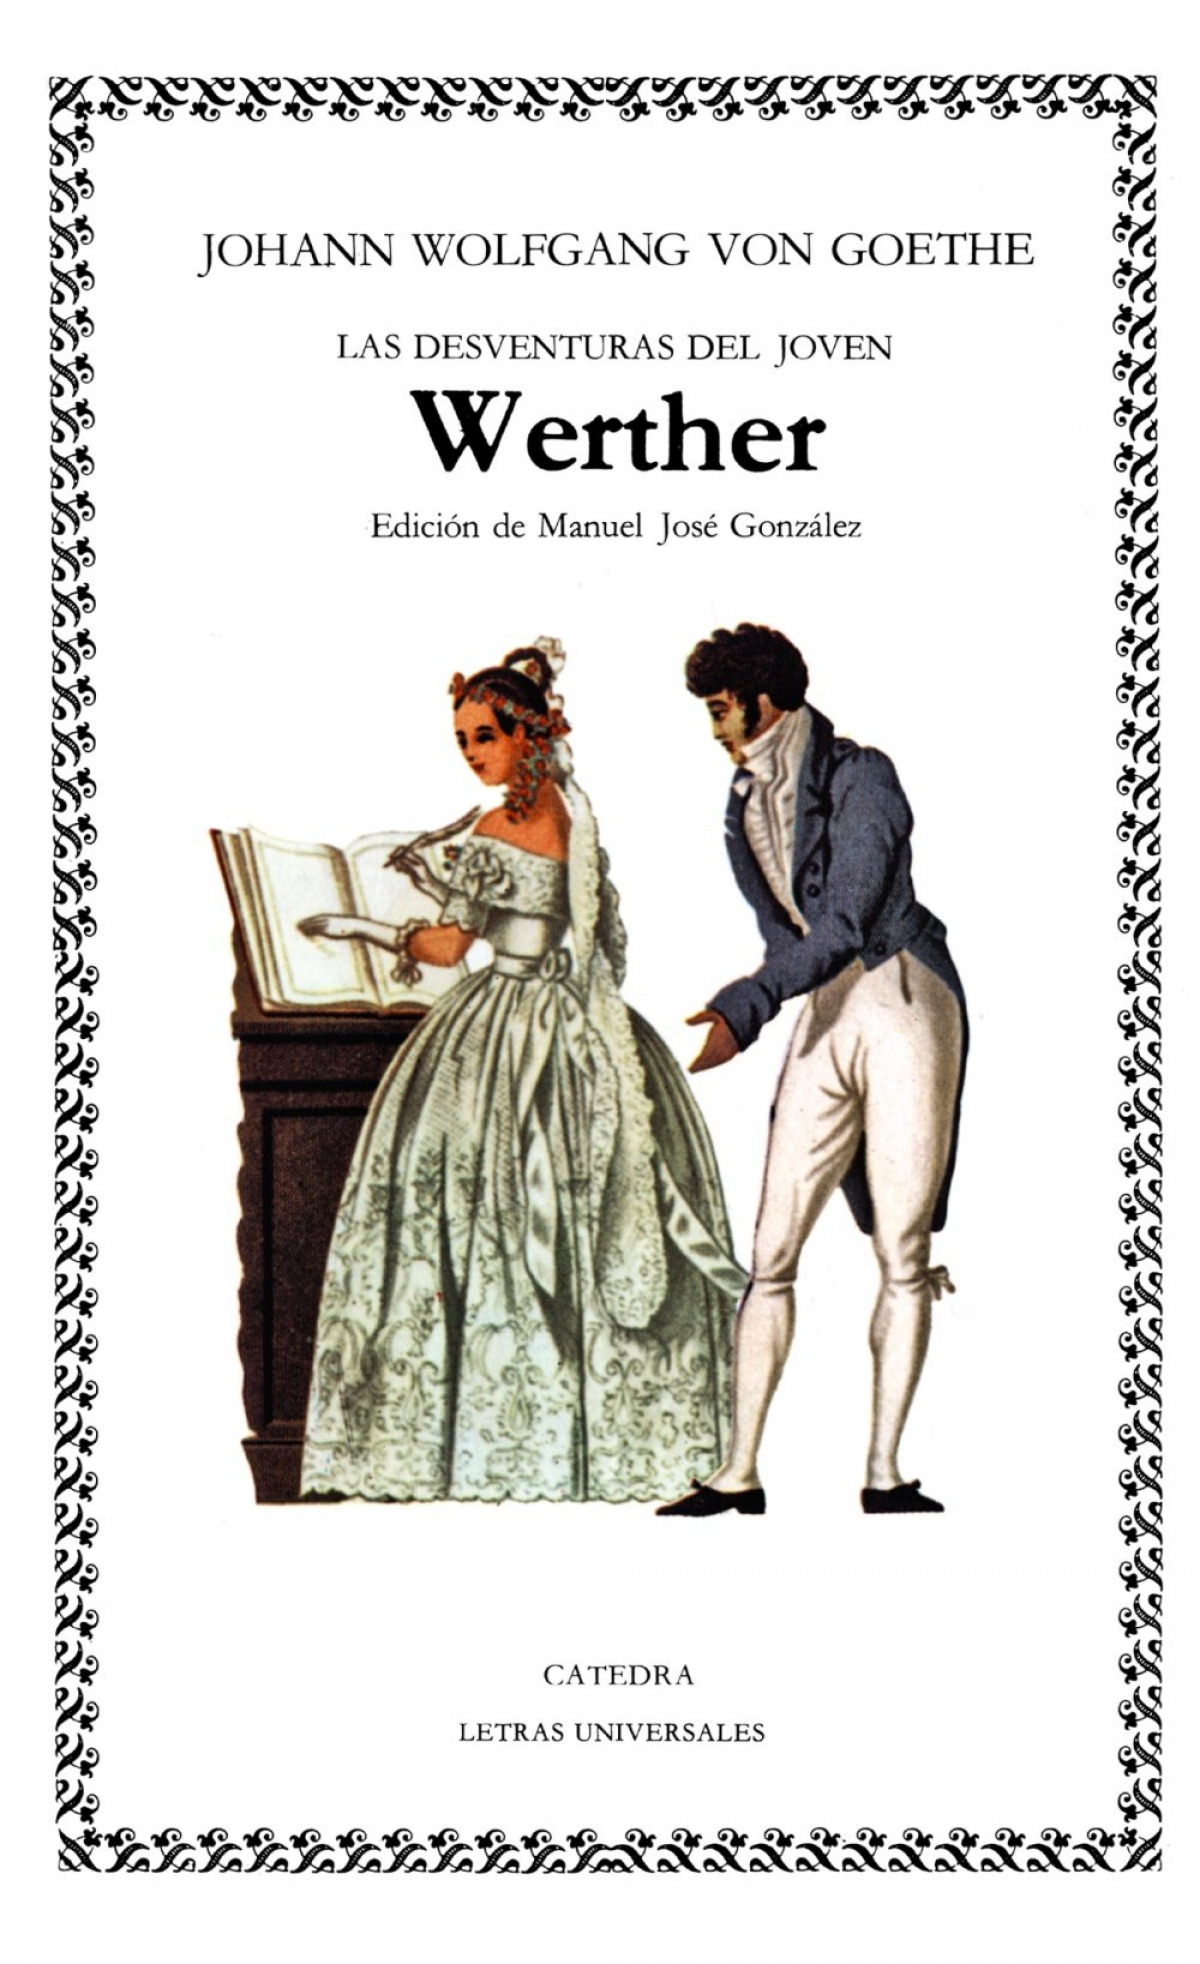 Las desventuras del joven Werther - Goethe, Johann Wolfgang von